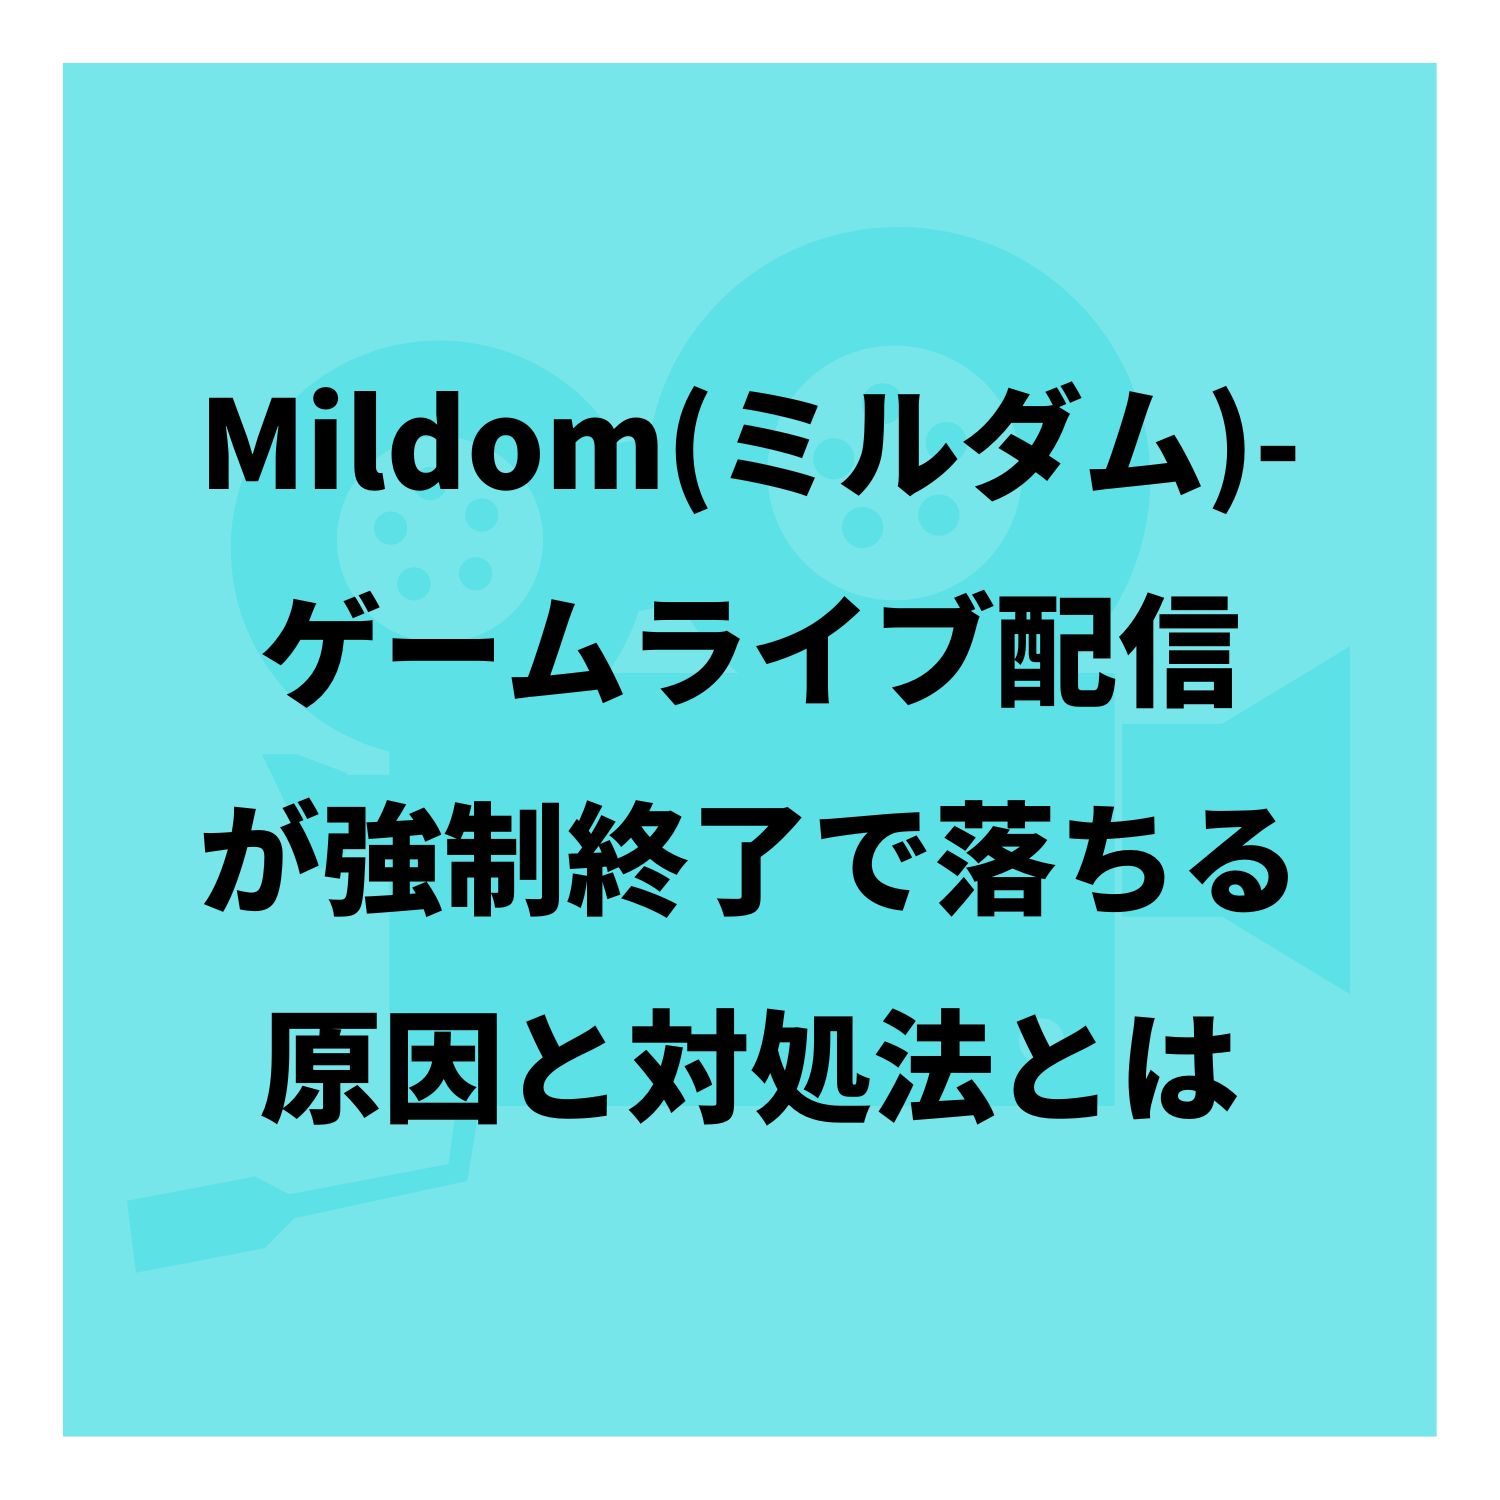 Mildom（ミルダム）−ゲームライブ配信が強制終了で落ちる原因と対処法とは #Mildom（ミルダム）−ゲームライブ配信